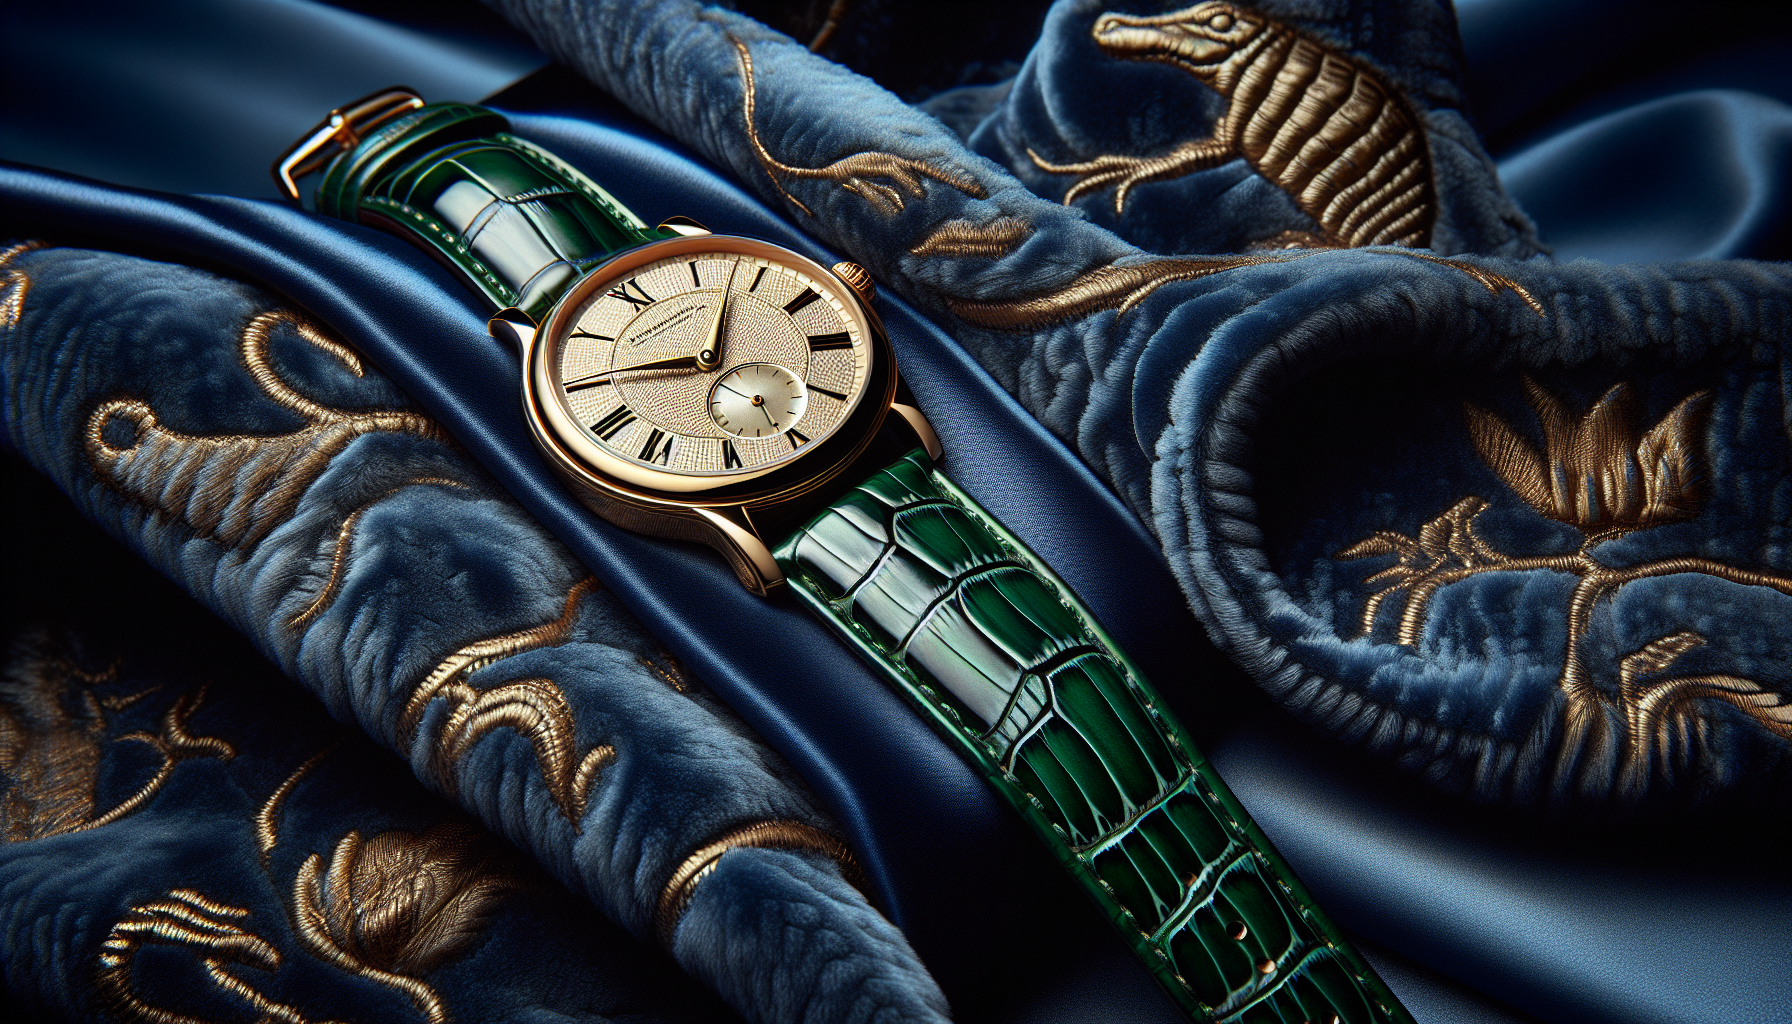 Luxurious crocodile leather watch band draped over a stylish wristwatch